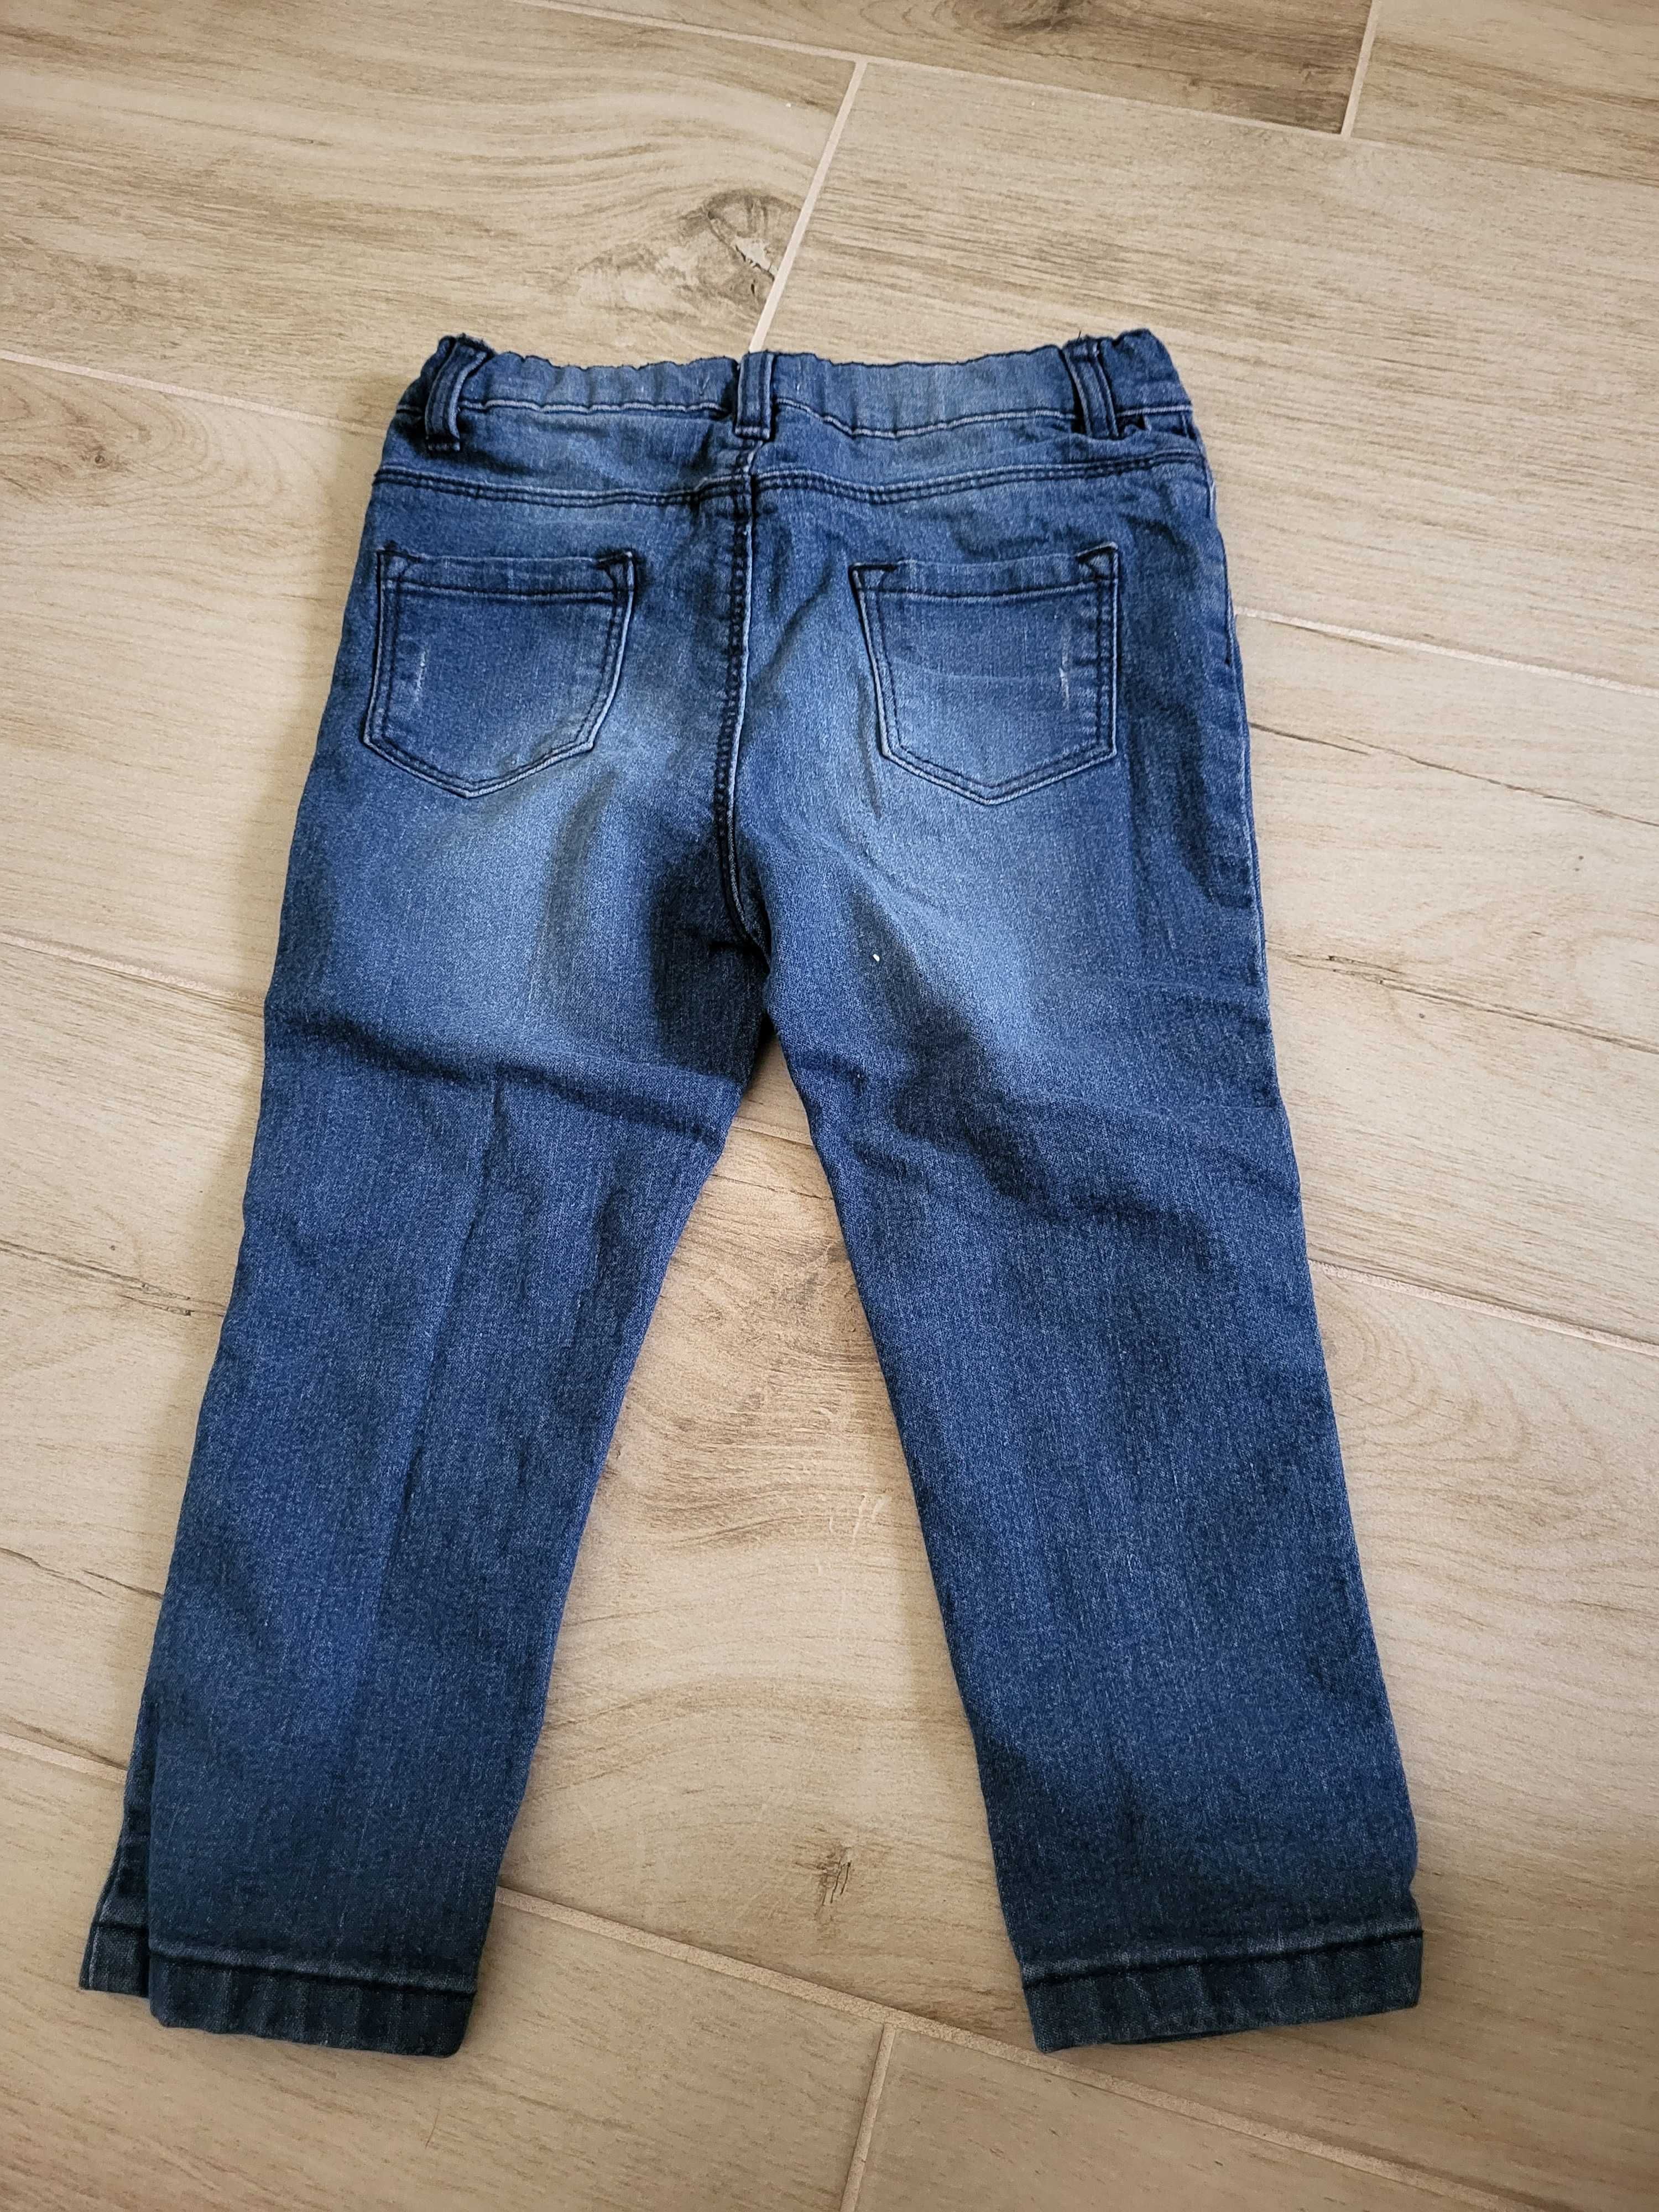 Spodnie jeansowe 92 jak nowe